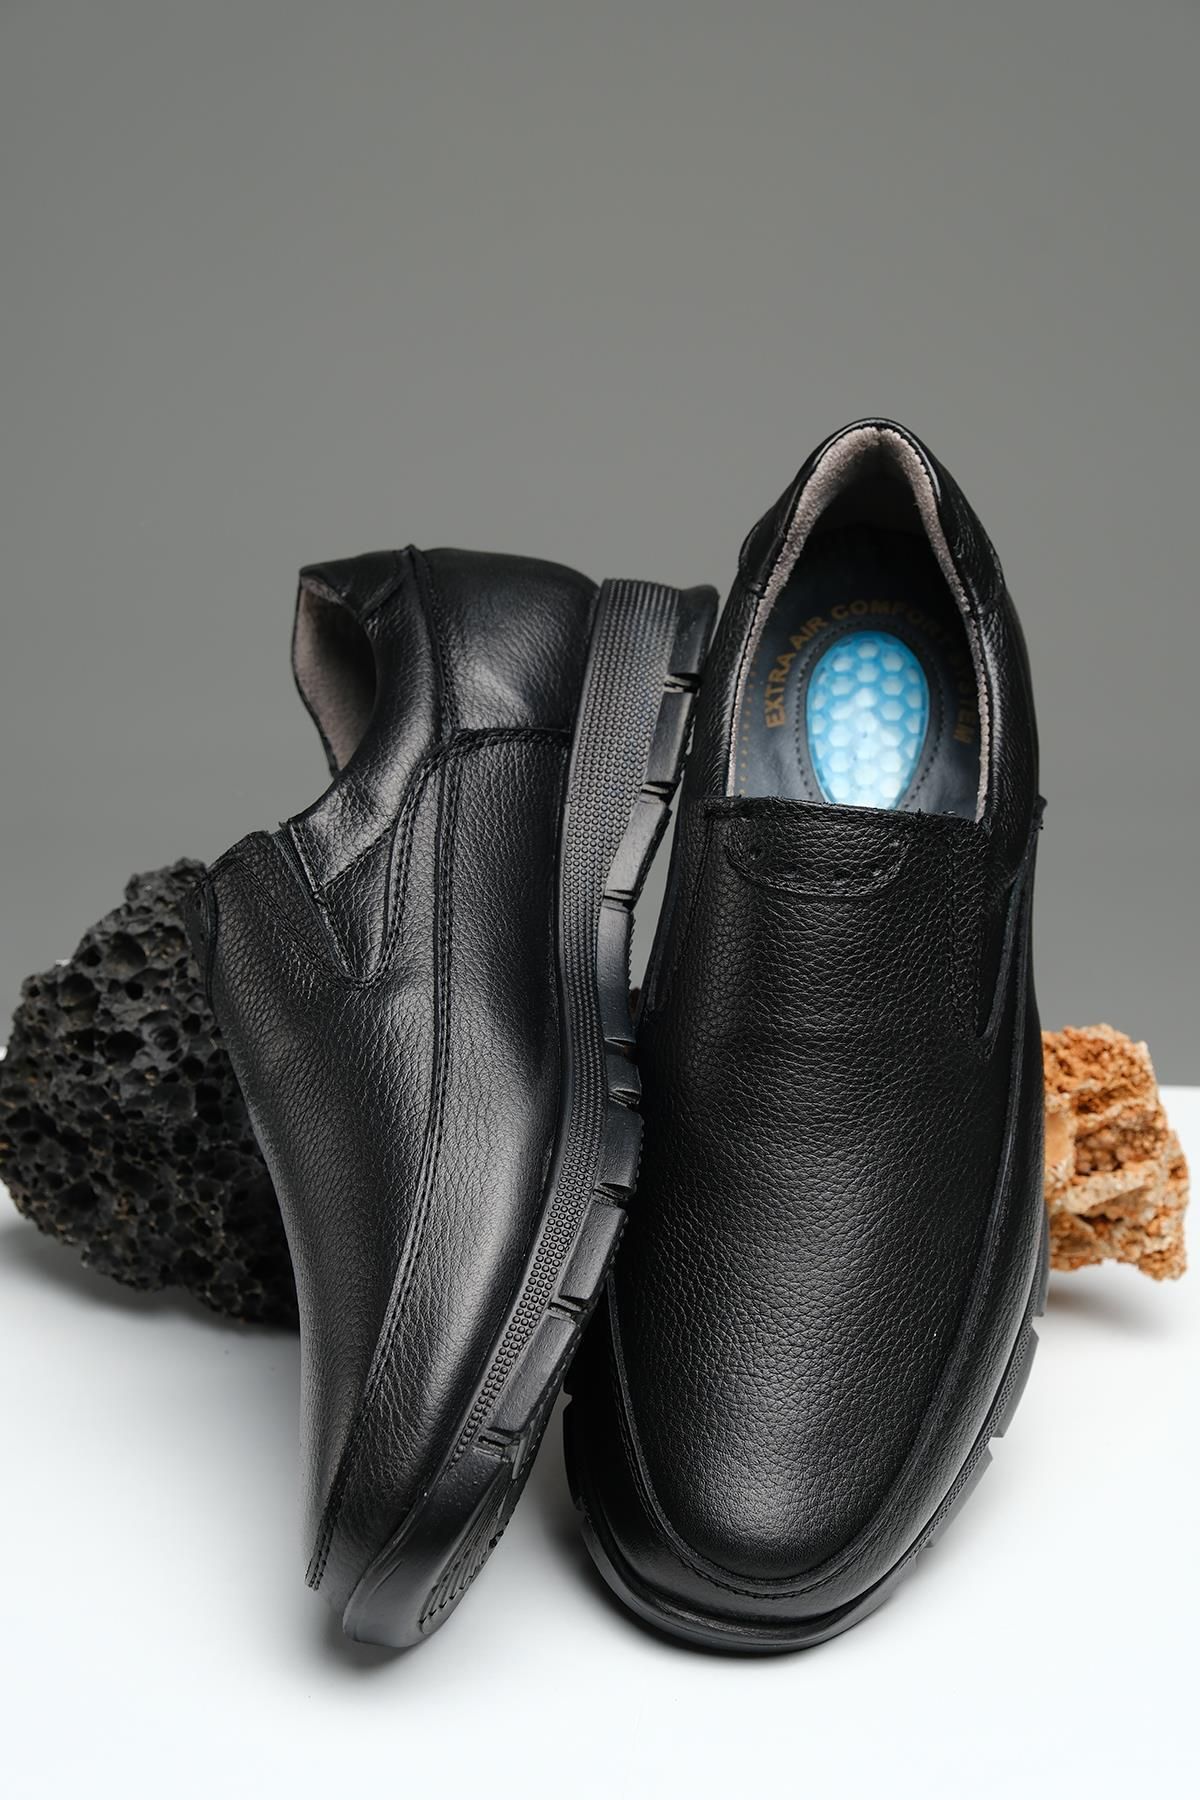 Oksit Rix Bağcıksız Ortopedik Topuk Masajlı Hakiki Deri Kışlık Erkek Ayakkabı